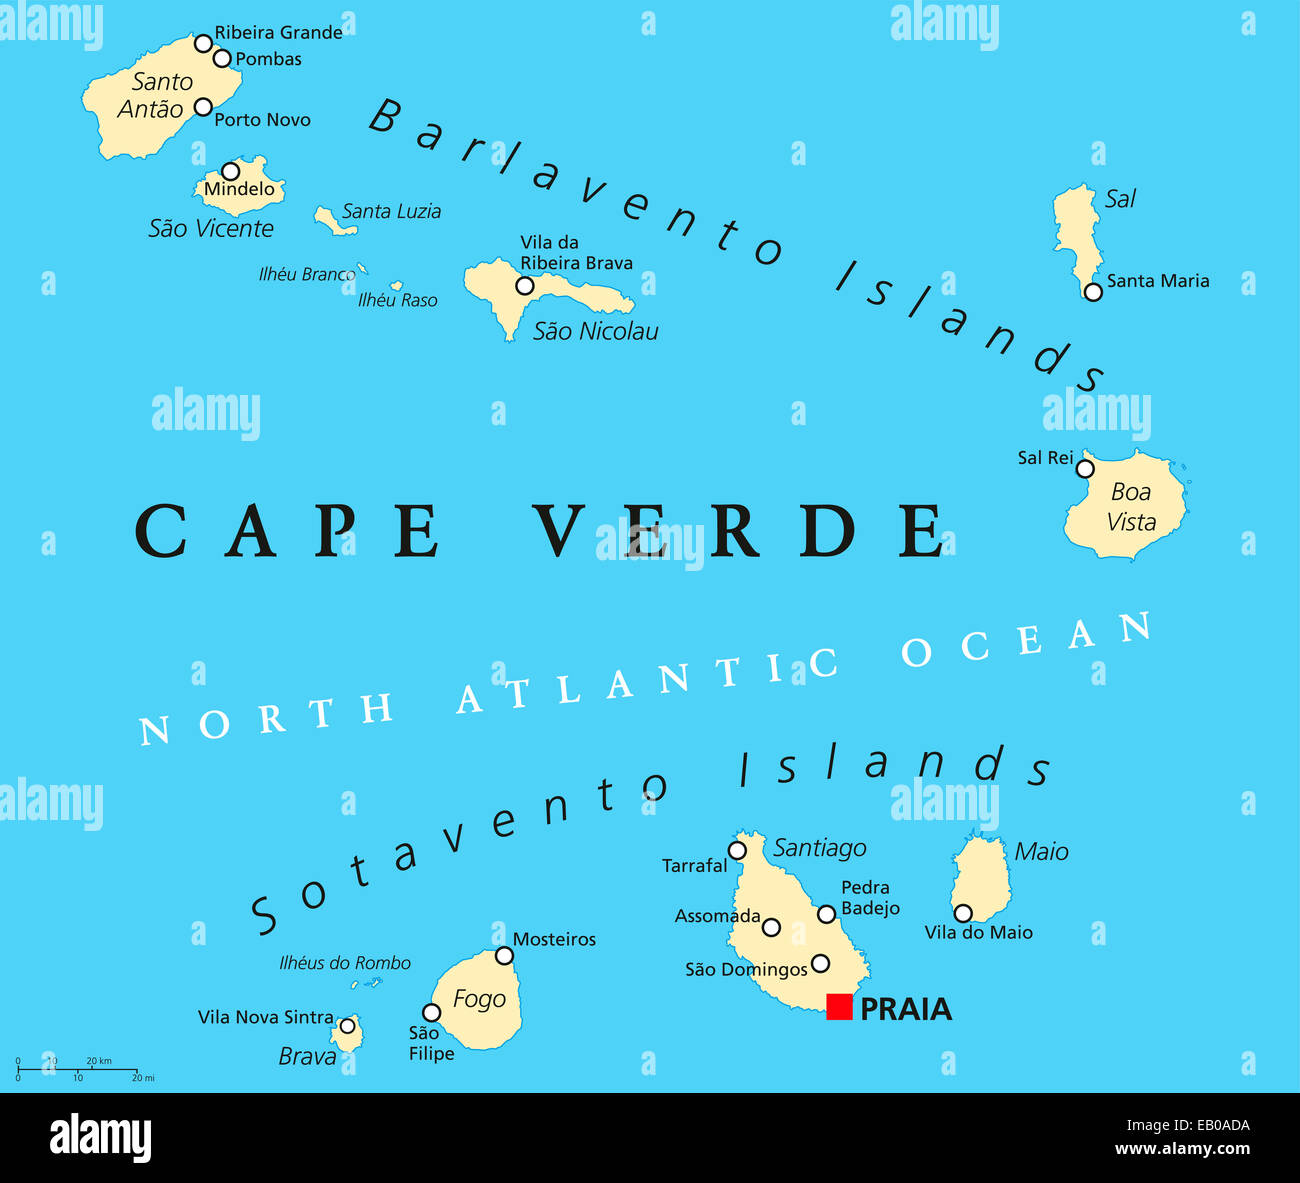 Politische Landkarte Kap Verde mit der Hauptstadt Praia und wichtige Städte. Englische Beschriftung und Skalierung. Abbildung. Stockfoto